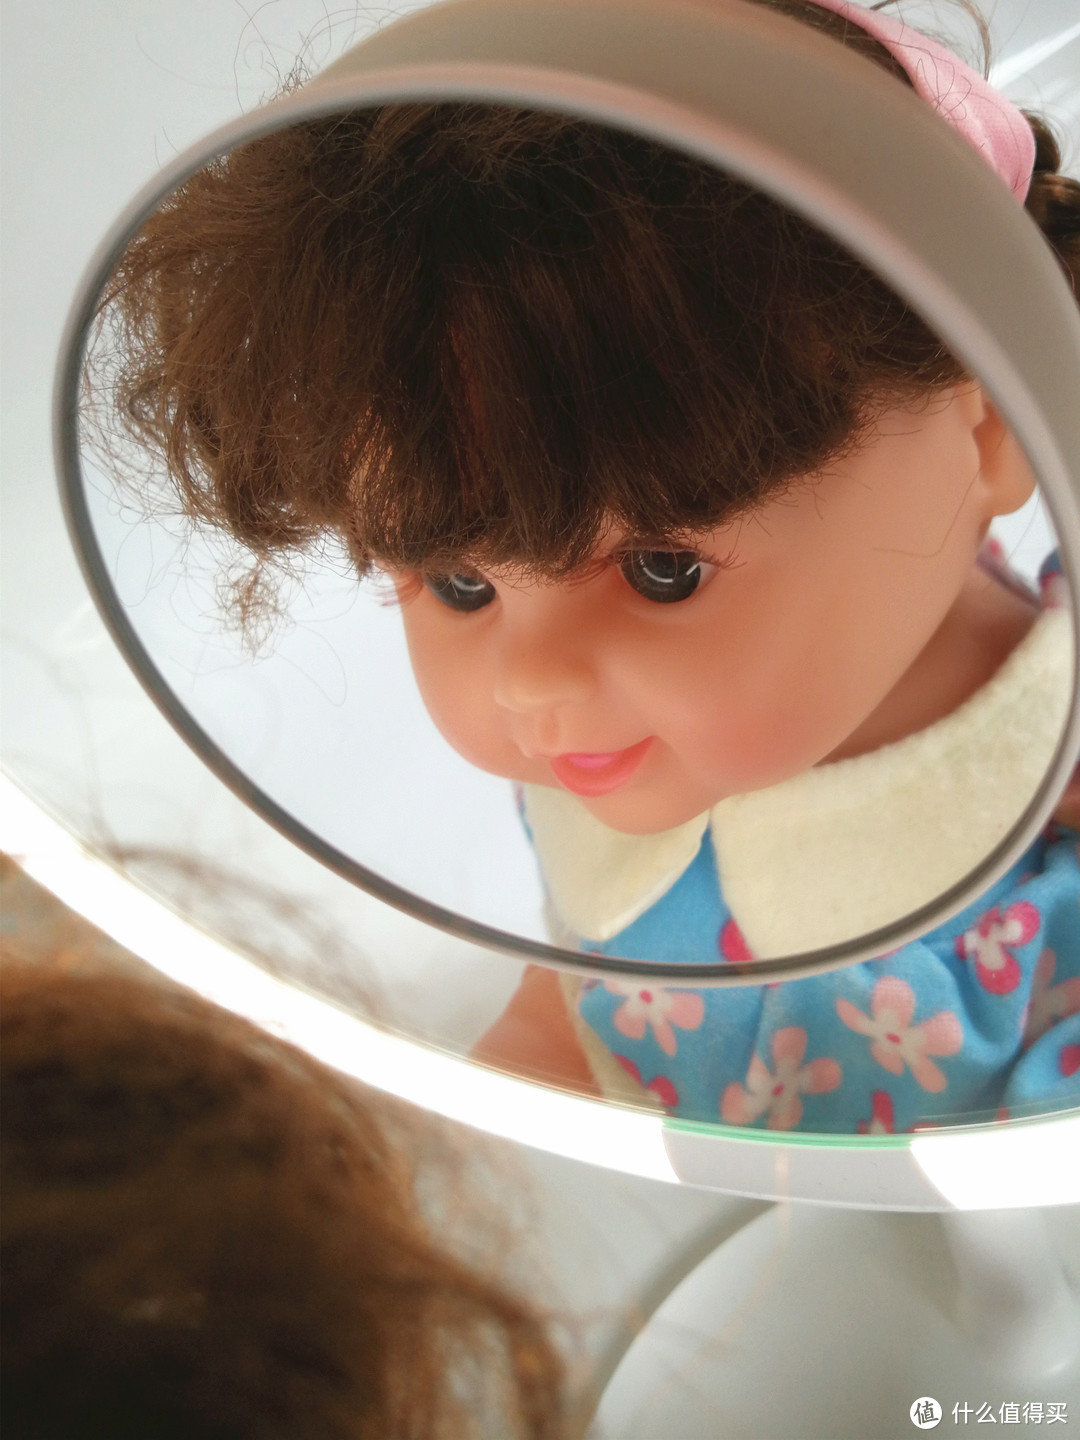 照亮你的“丑”，没有福利的普通报告——AMIRO MINI系列 高清日光化妆镜